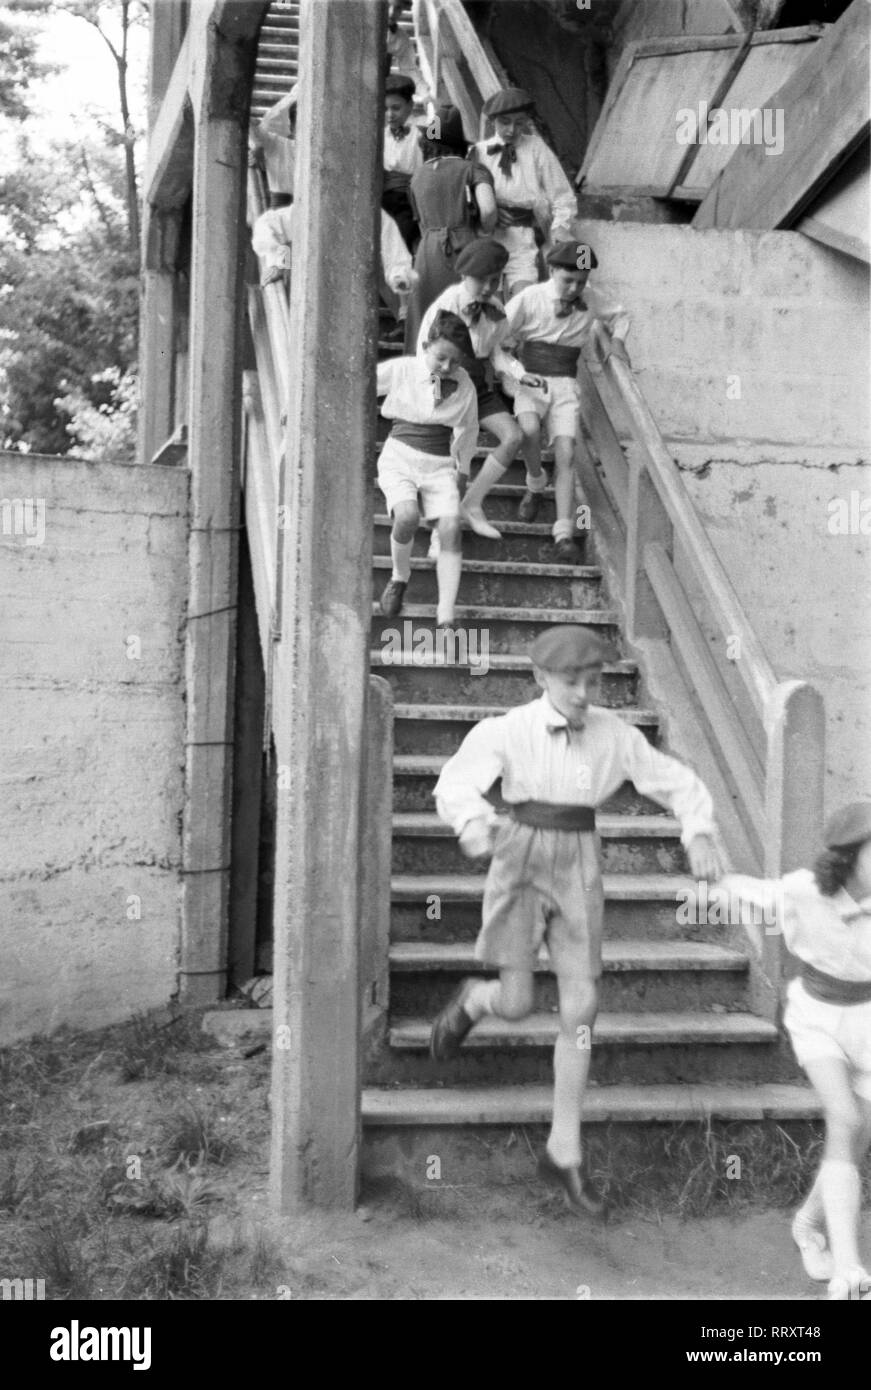 Frankreich - Southern France in 1950s. Basque region. children on a stairway. Photo by Erich Andres Frankreich ca. 1950, Baskenland, Kinder auf der Treppe Stock Photo